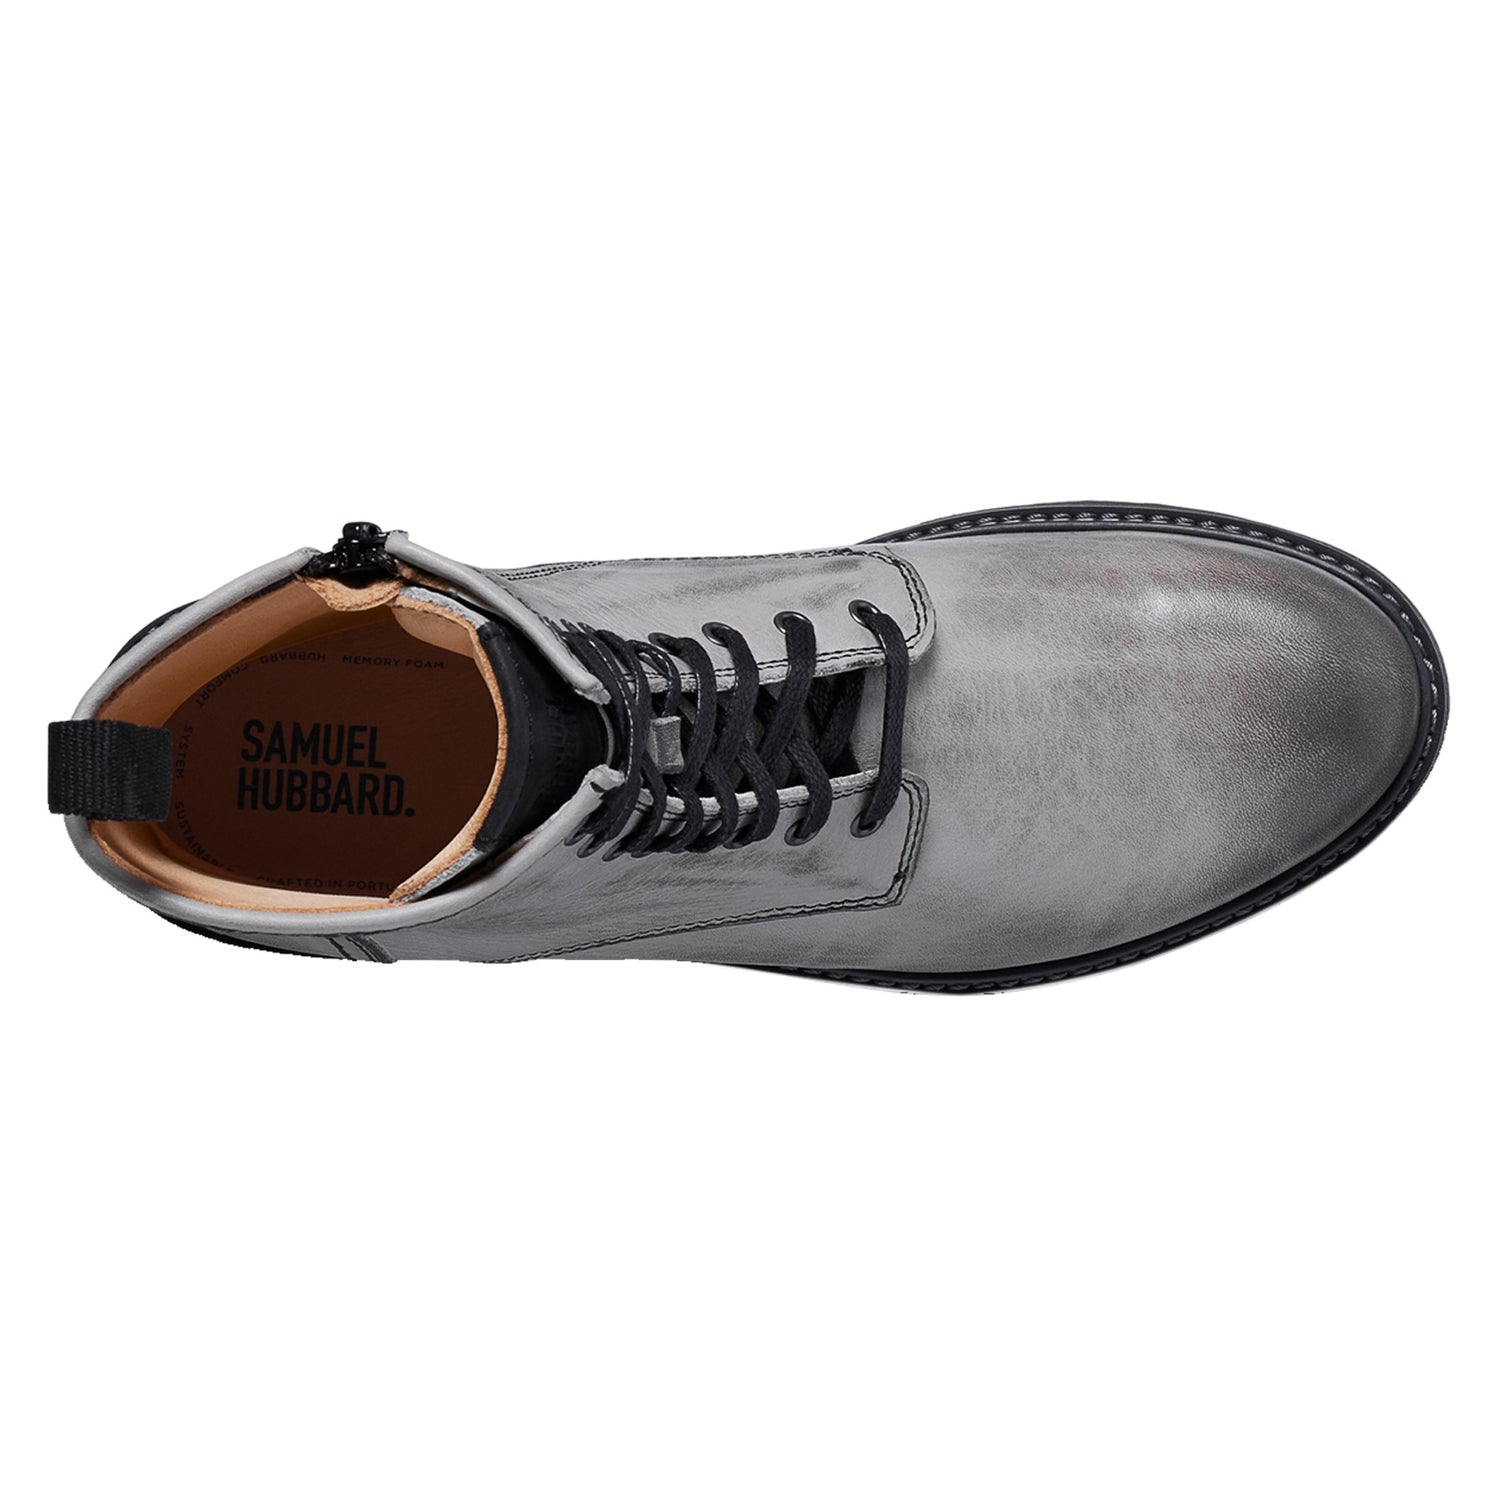 Peltz Shoes  Women’s Samuel Hubbard Lombard Boot Gray Leather W1505-087